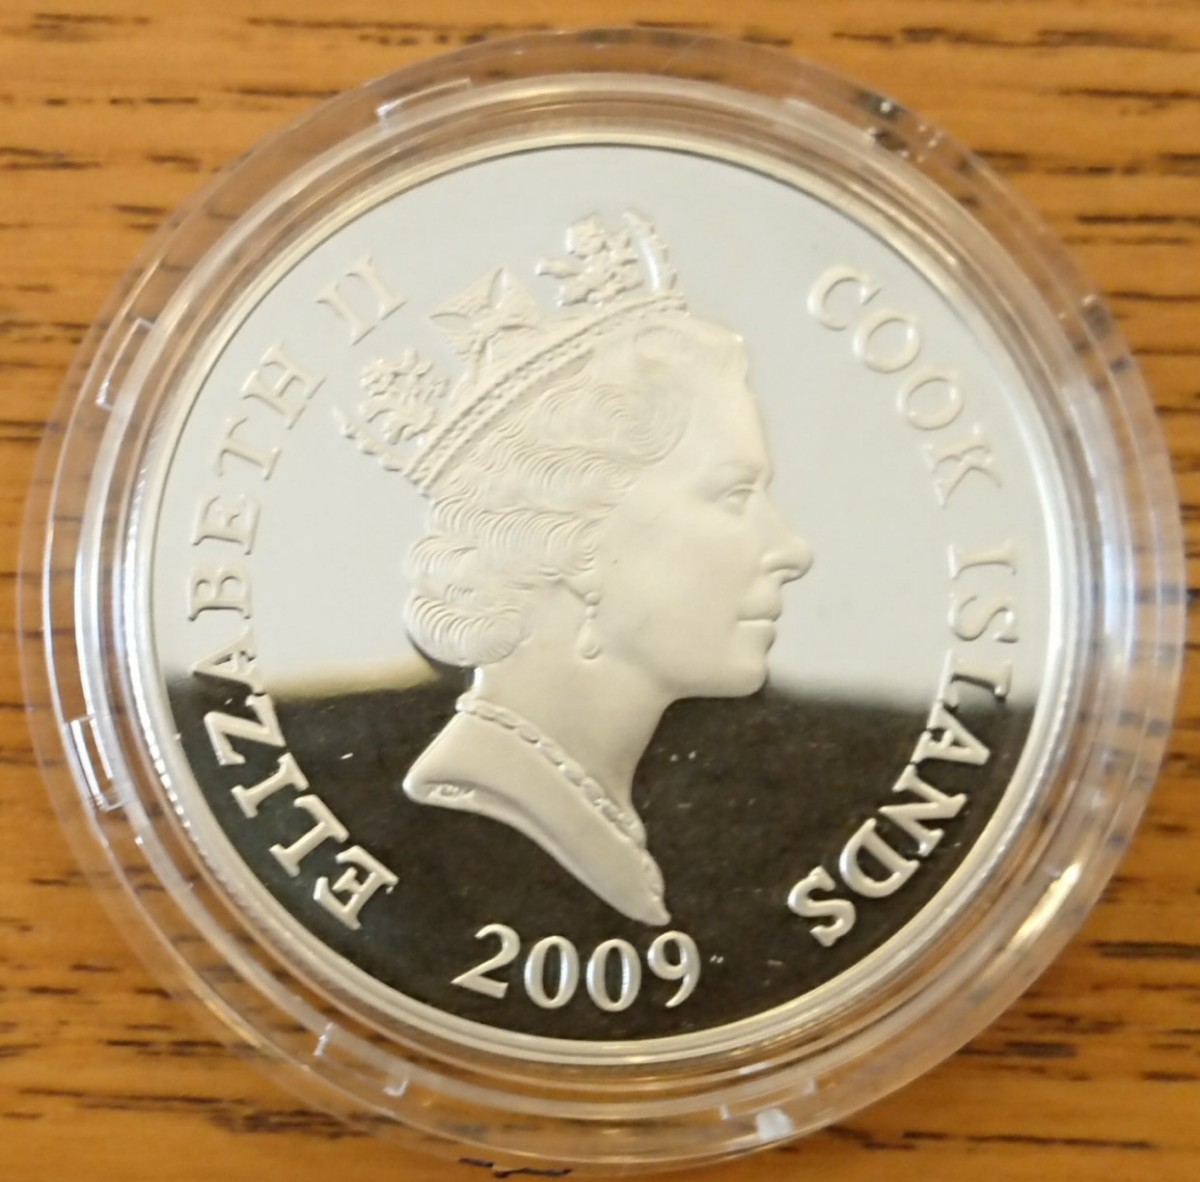 2009 クック諸島 ハローキティ 35周年記念 5ドル プルーフカラー銀貨 3種セット